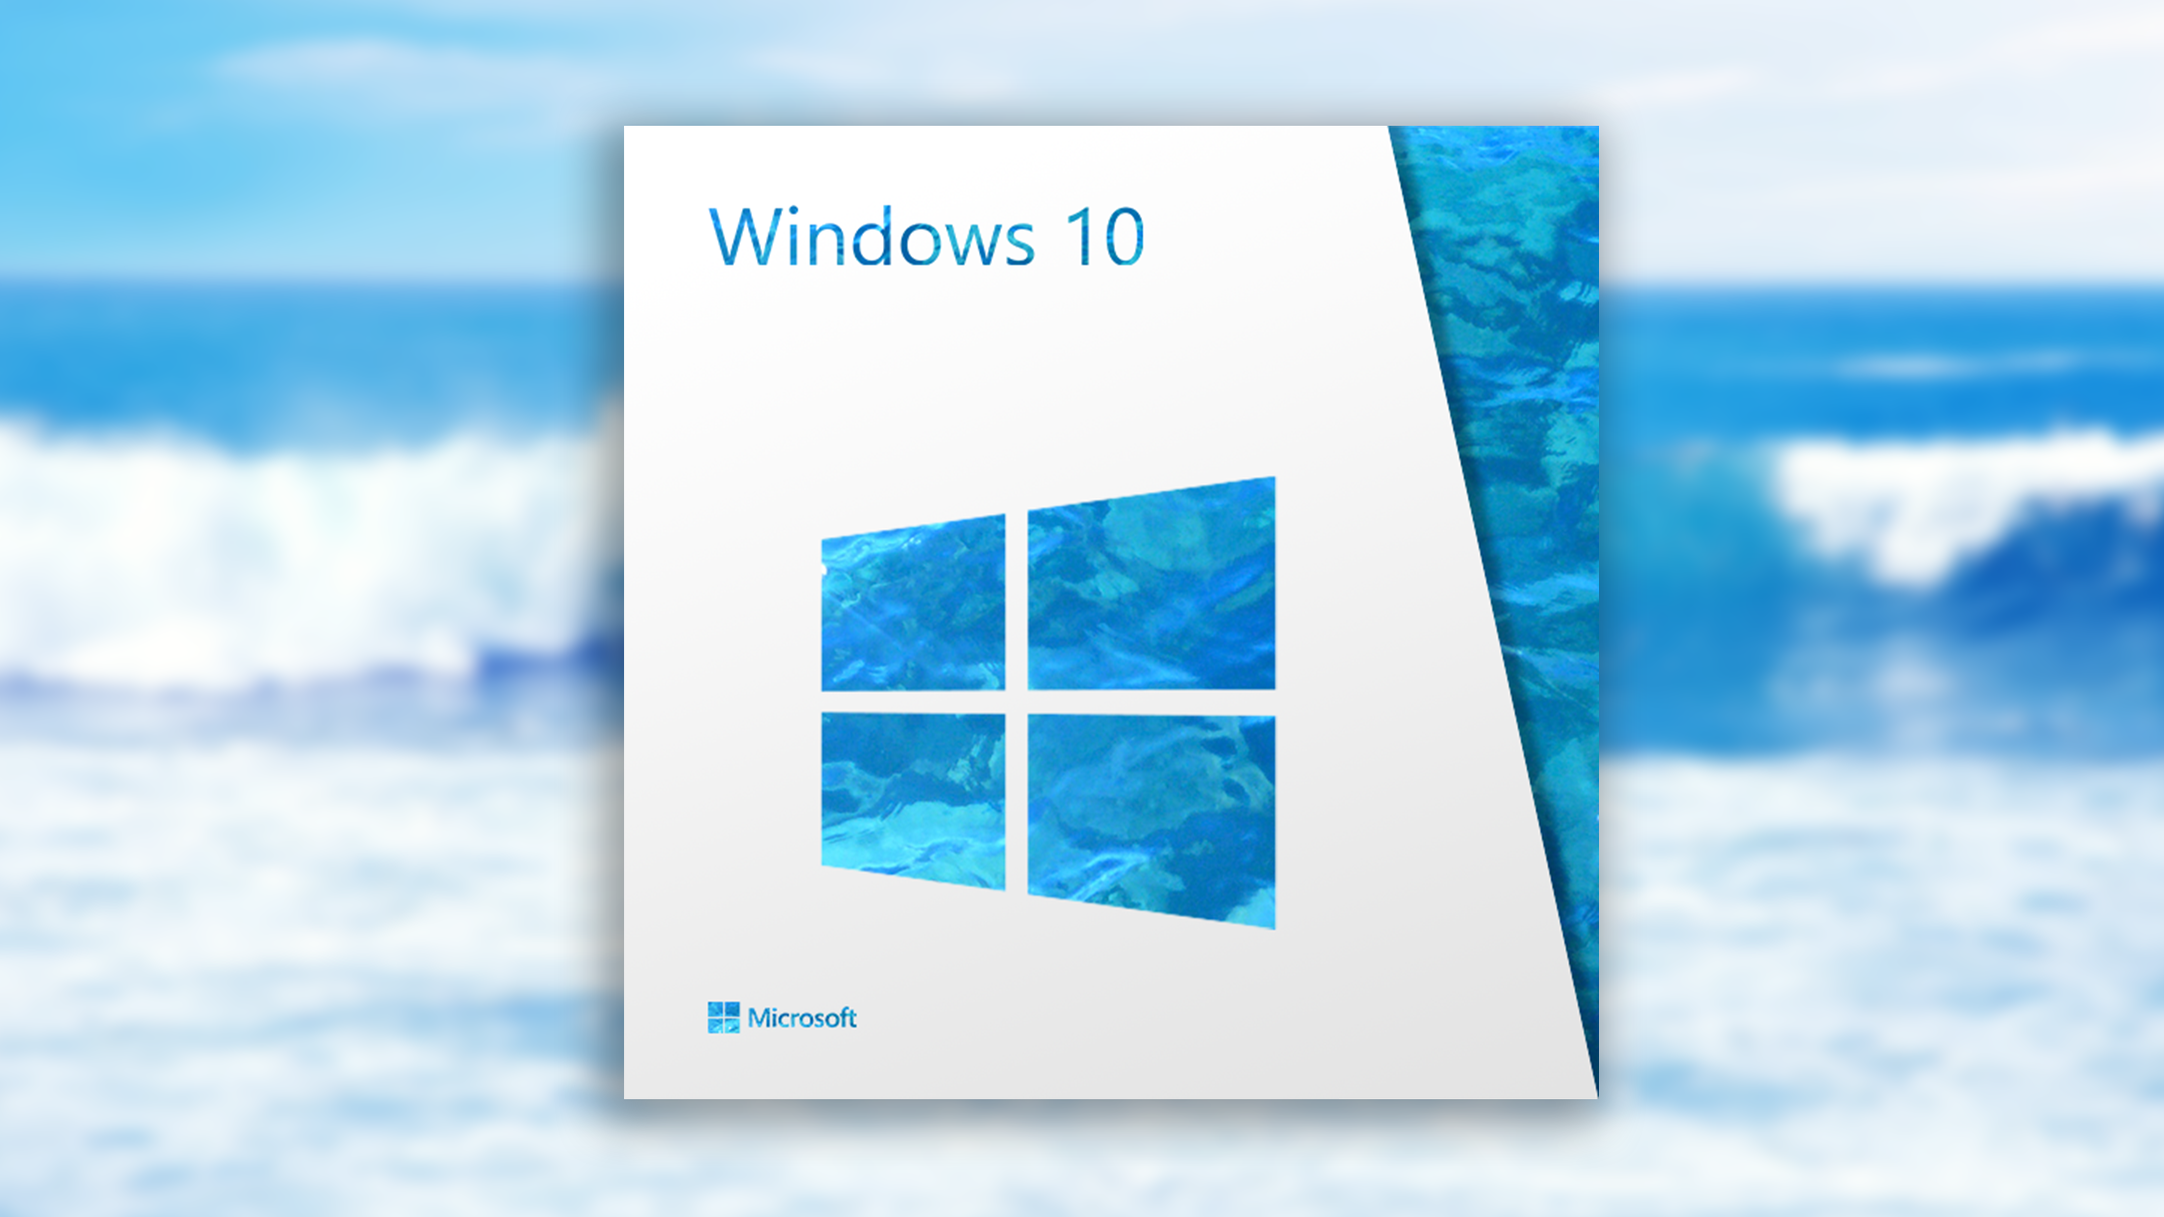 Seus jogos no Windows 10 - Suporte da Microsoft